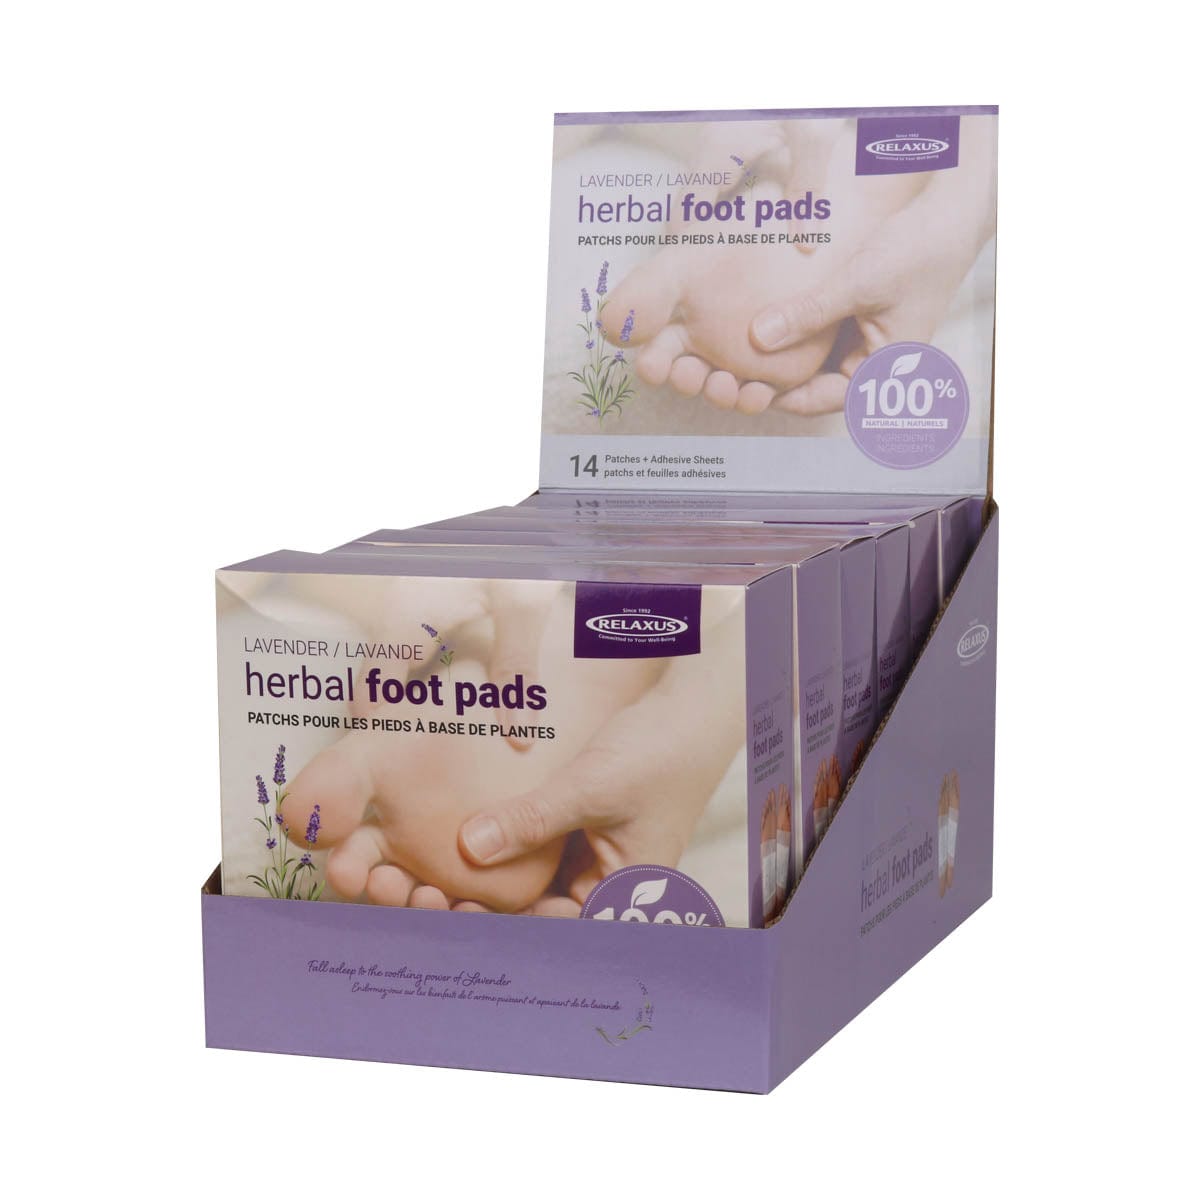 Lavender Herbal Detox Foot Pads displayer